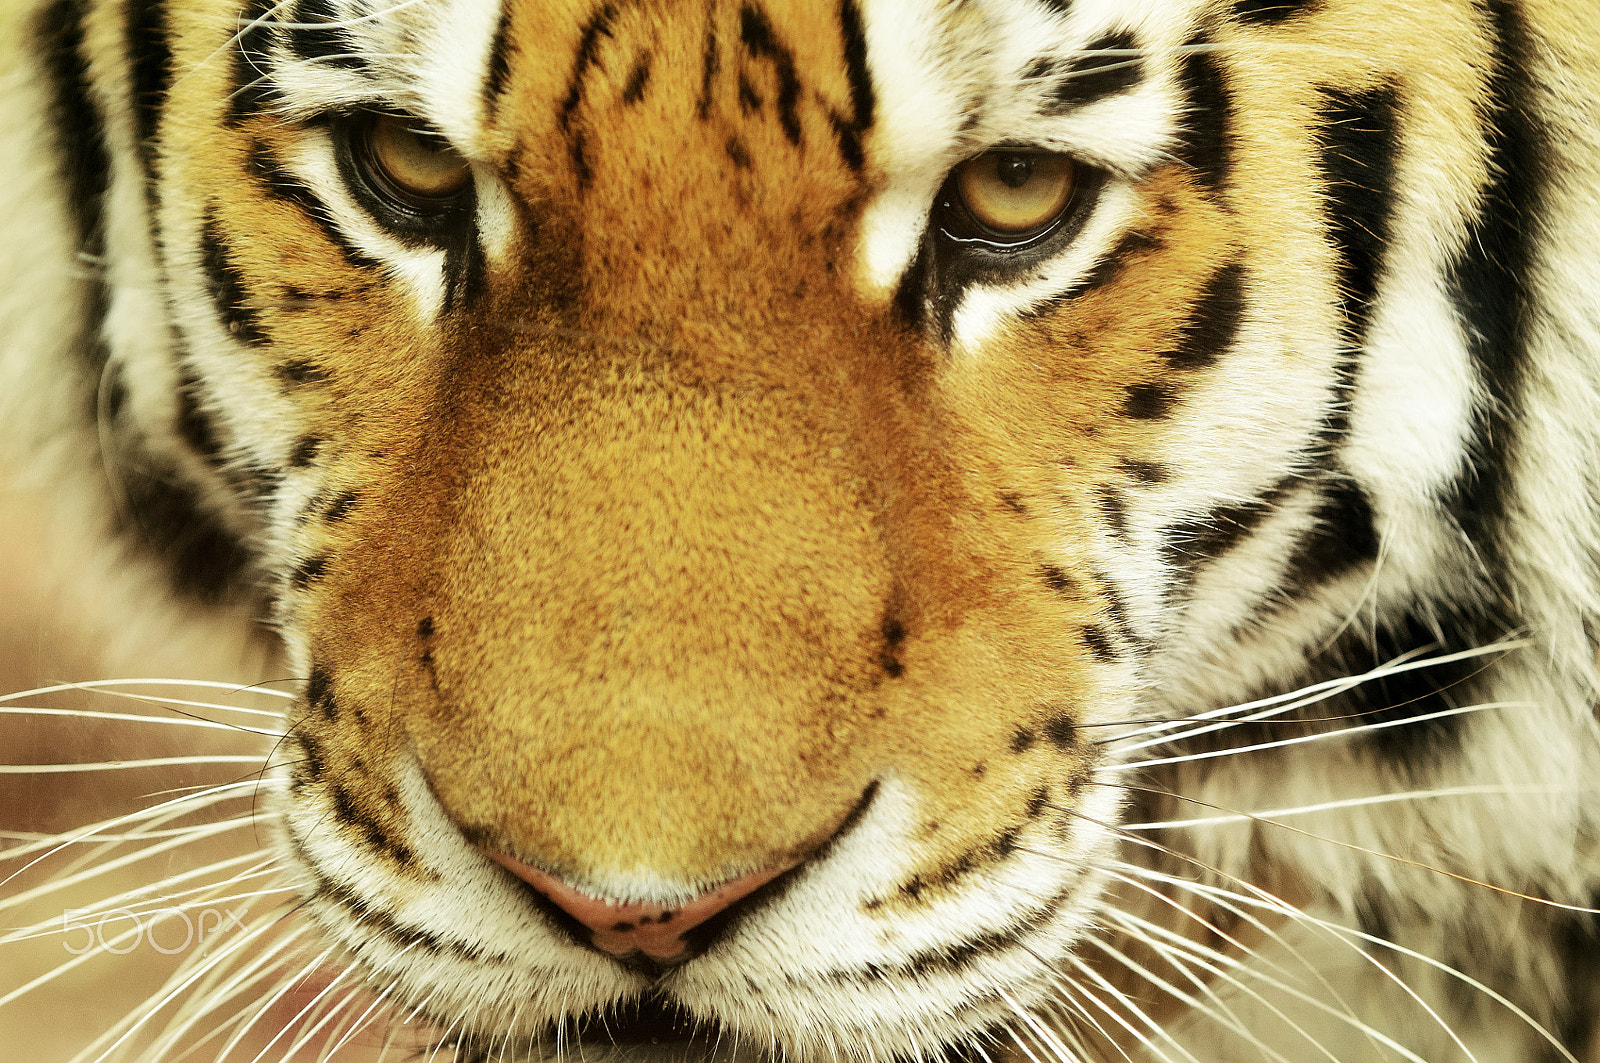 Nikon D90 sample photo. Siberian tiger photography